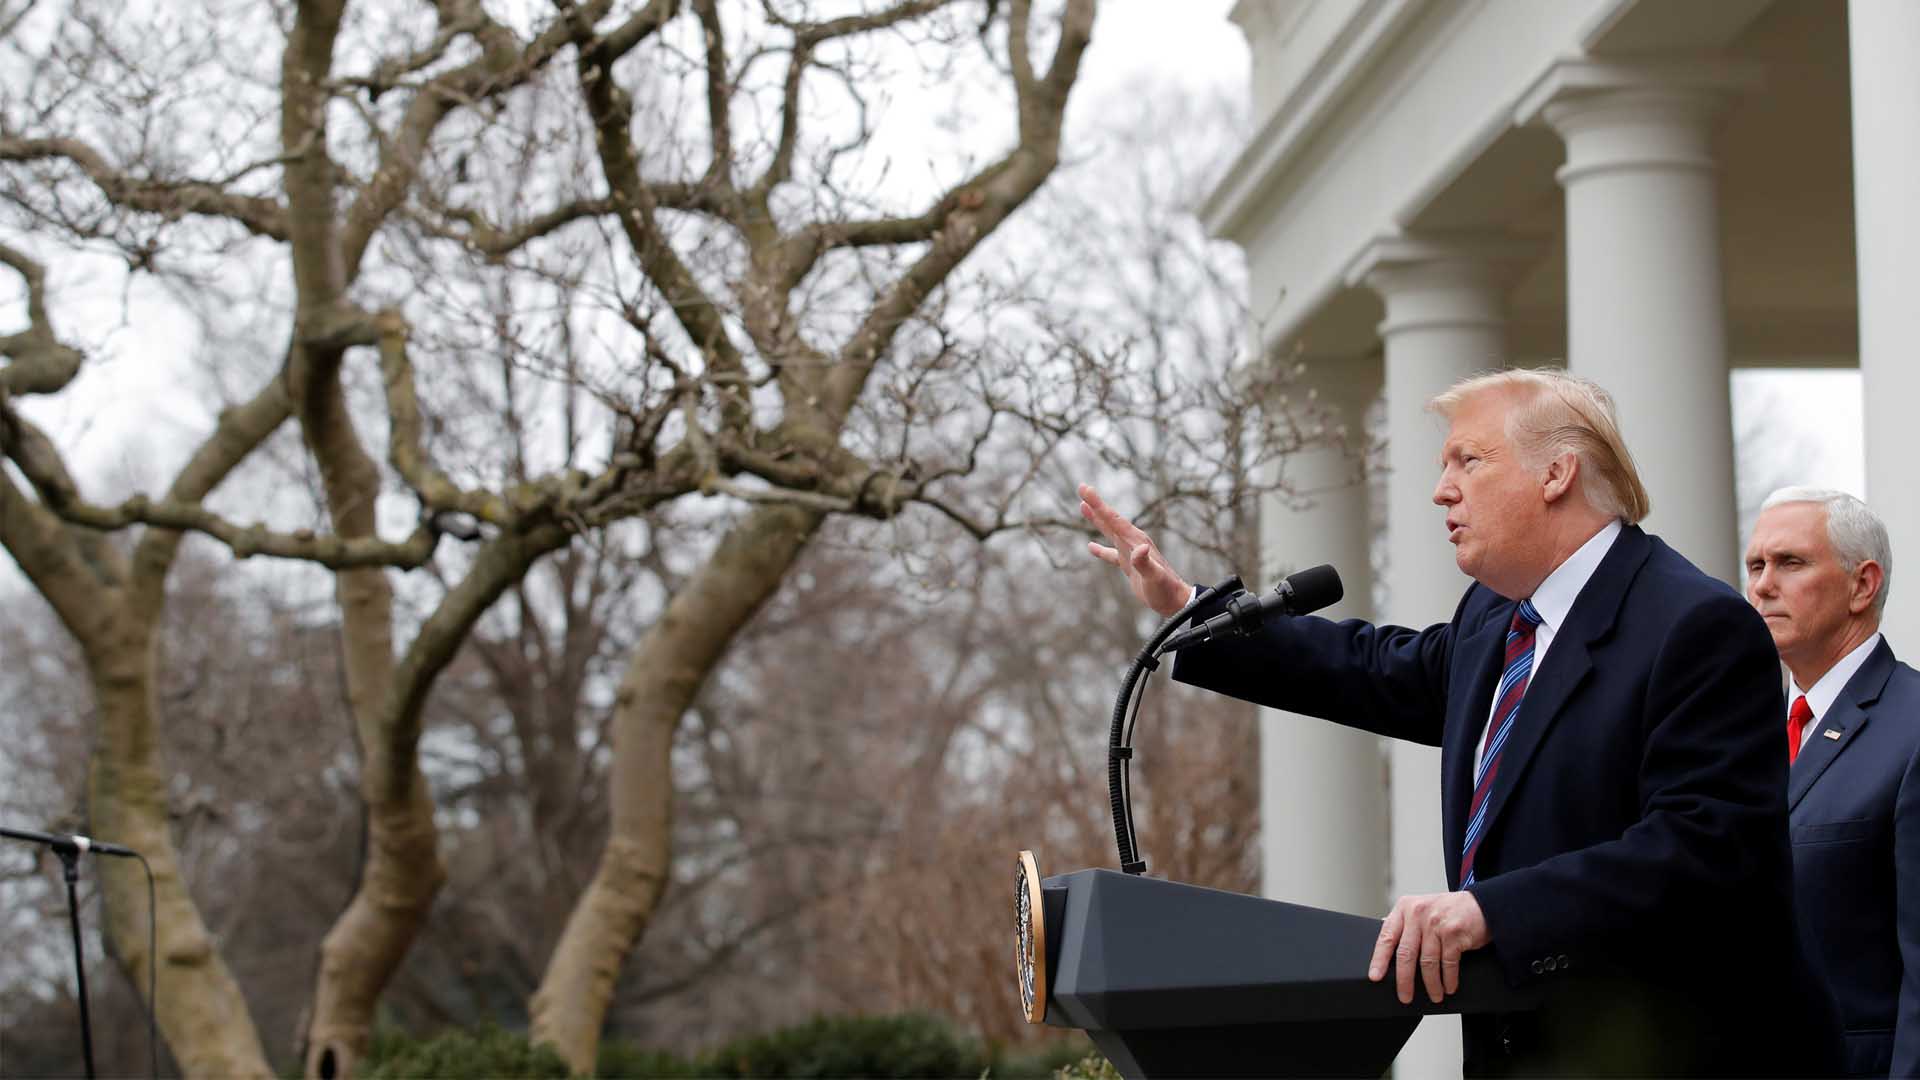 Trump amenaza con declarar una emergencia nacional para financiar el muro